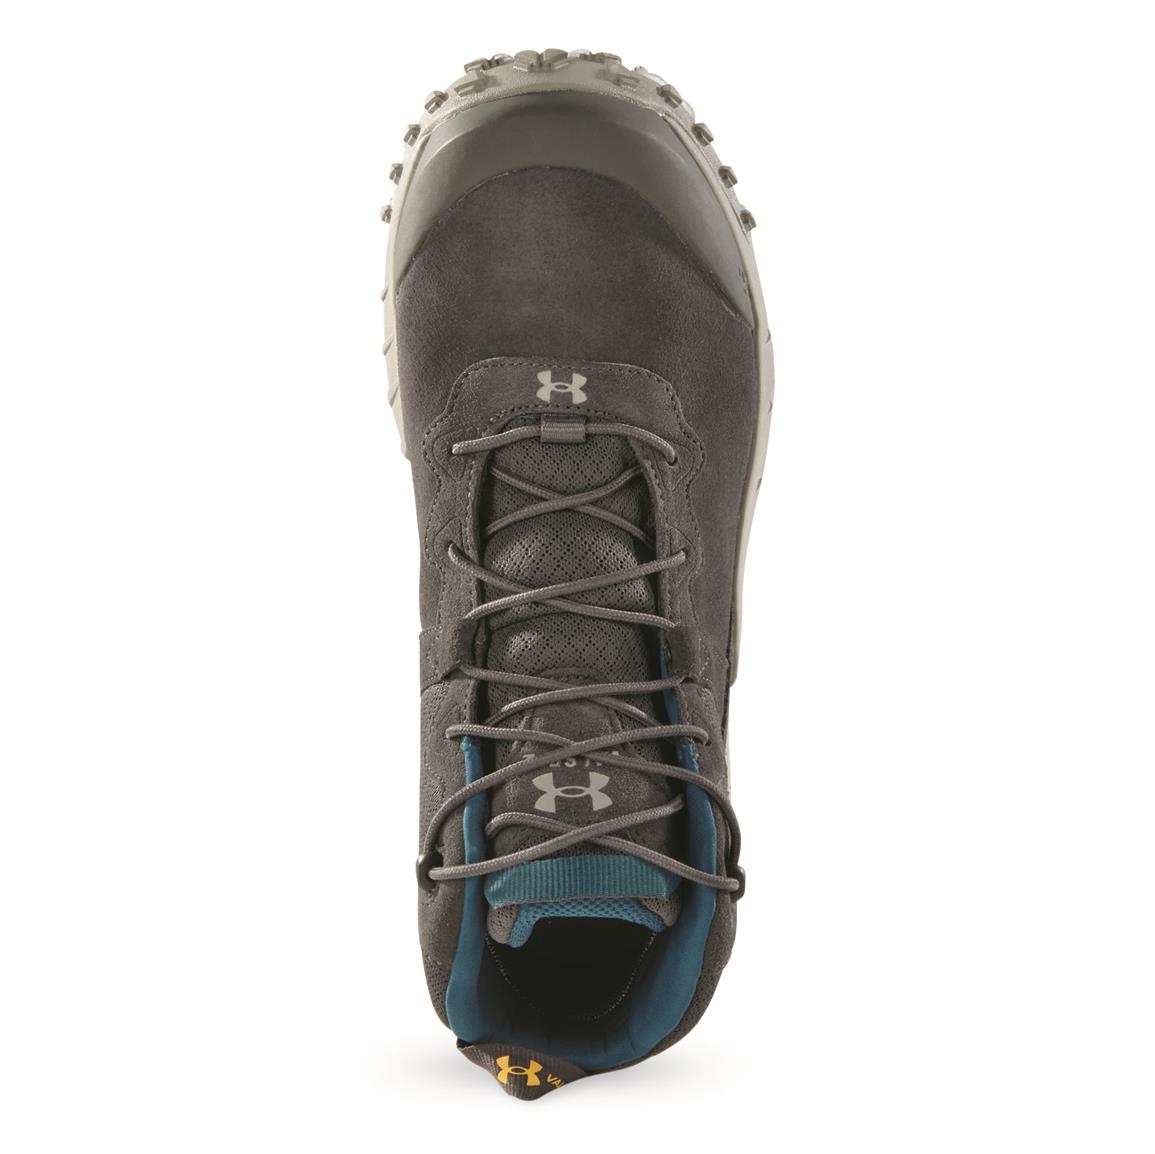 Under Armour Micro G Valsetz Trek Mid Leather Waterproof Men's Tactical  Boots